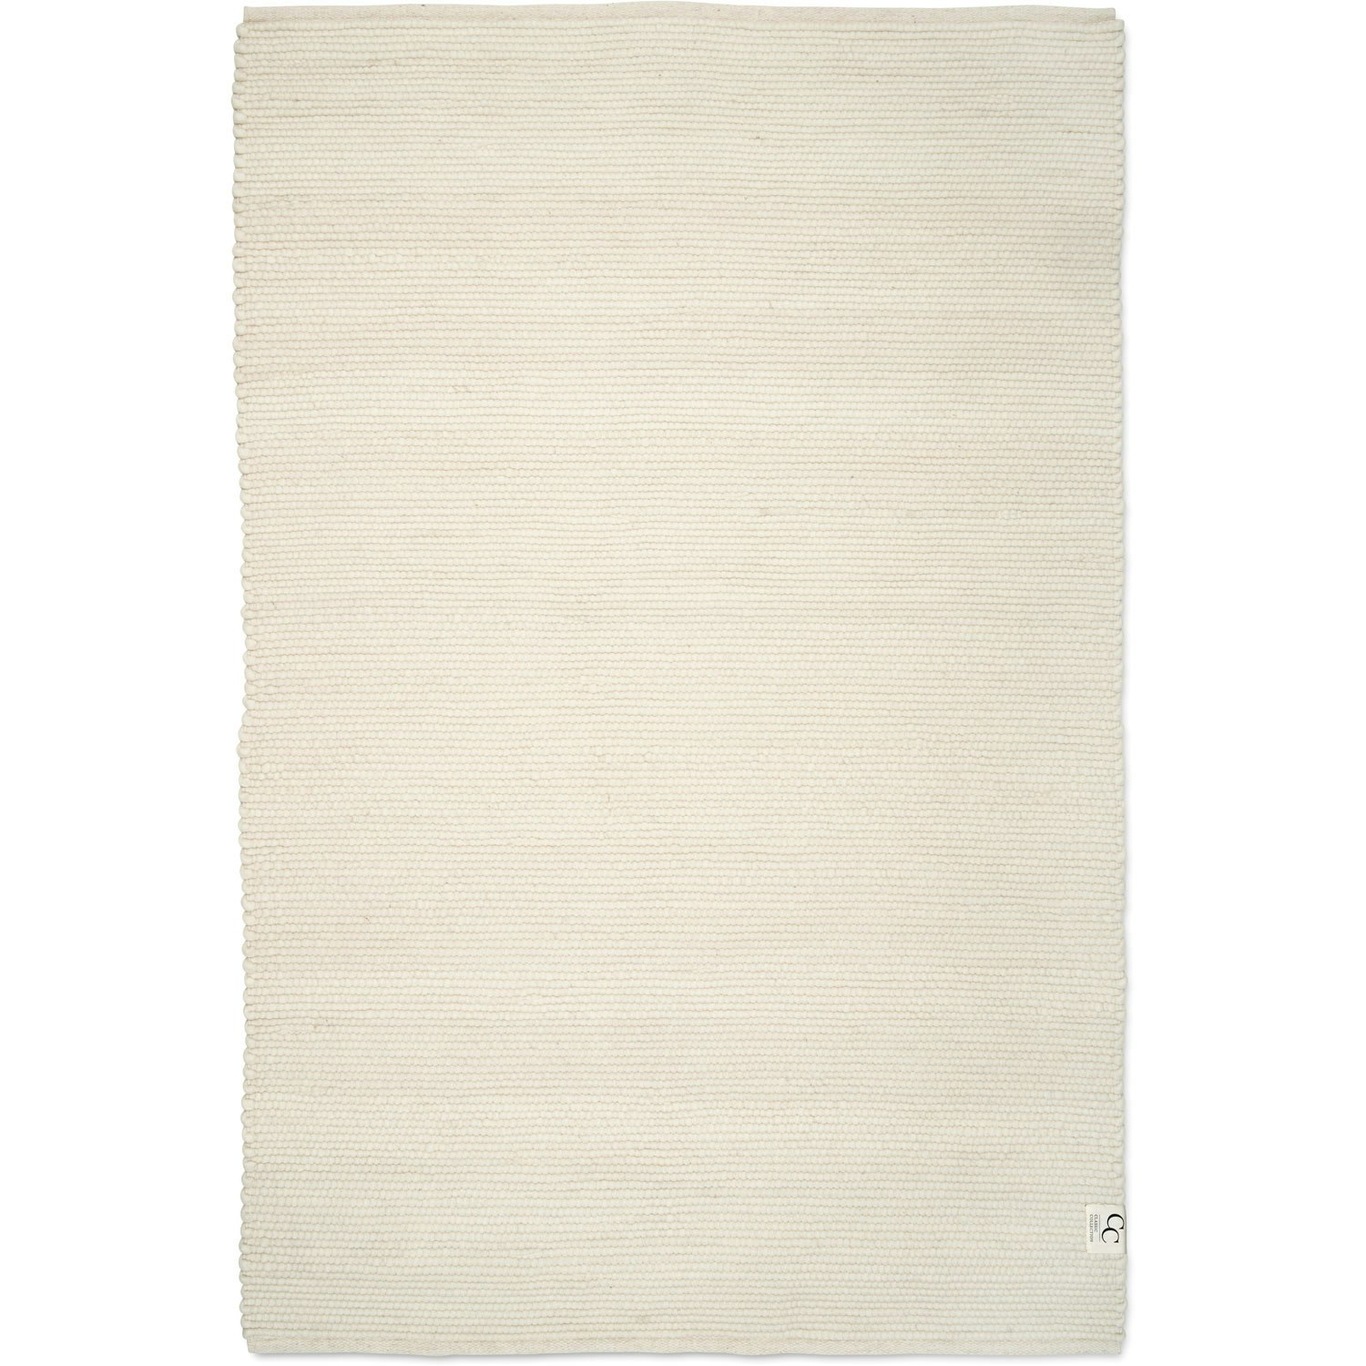 Merino Teppich 140x200 cm, Weiß